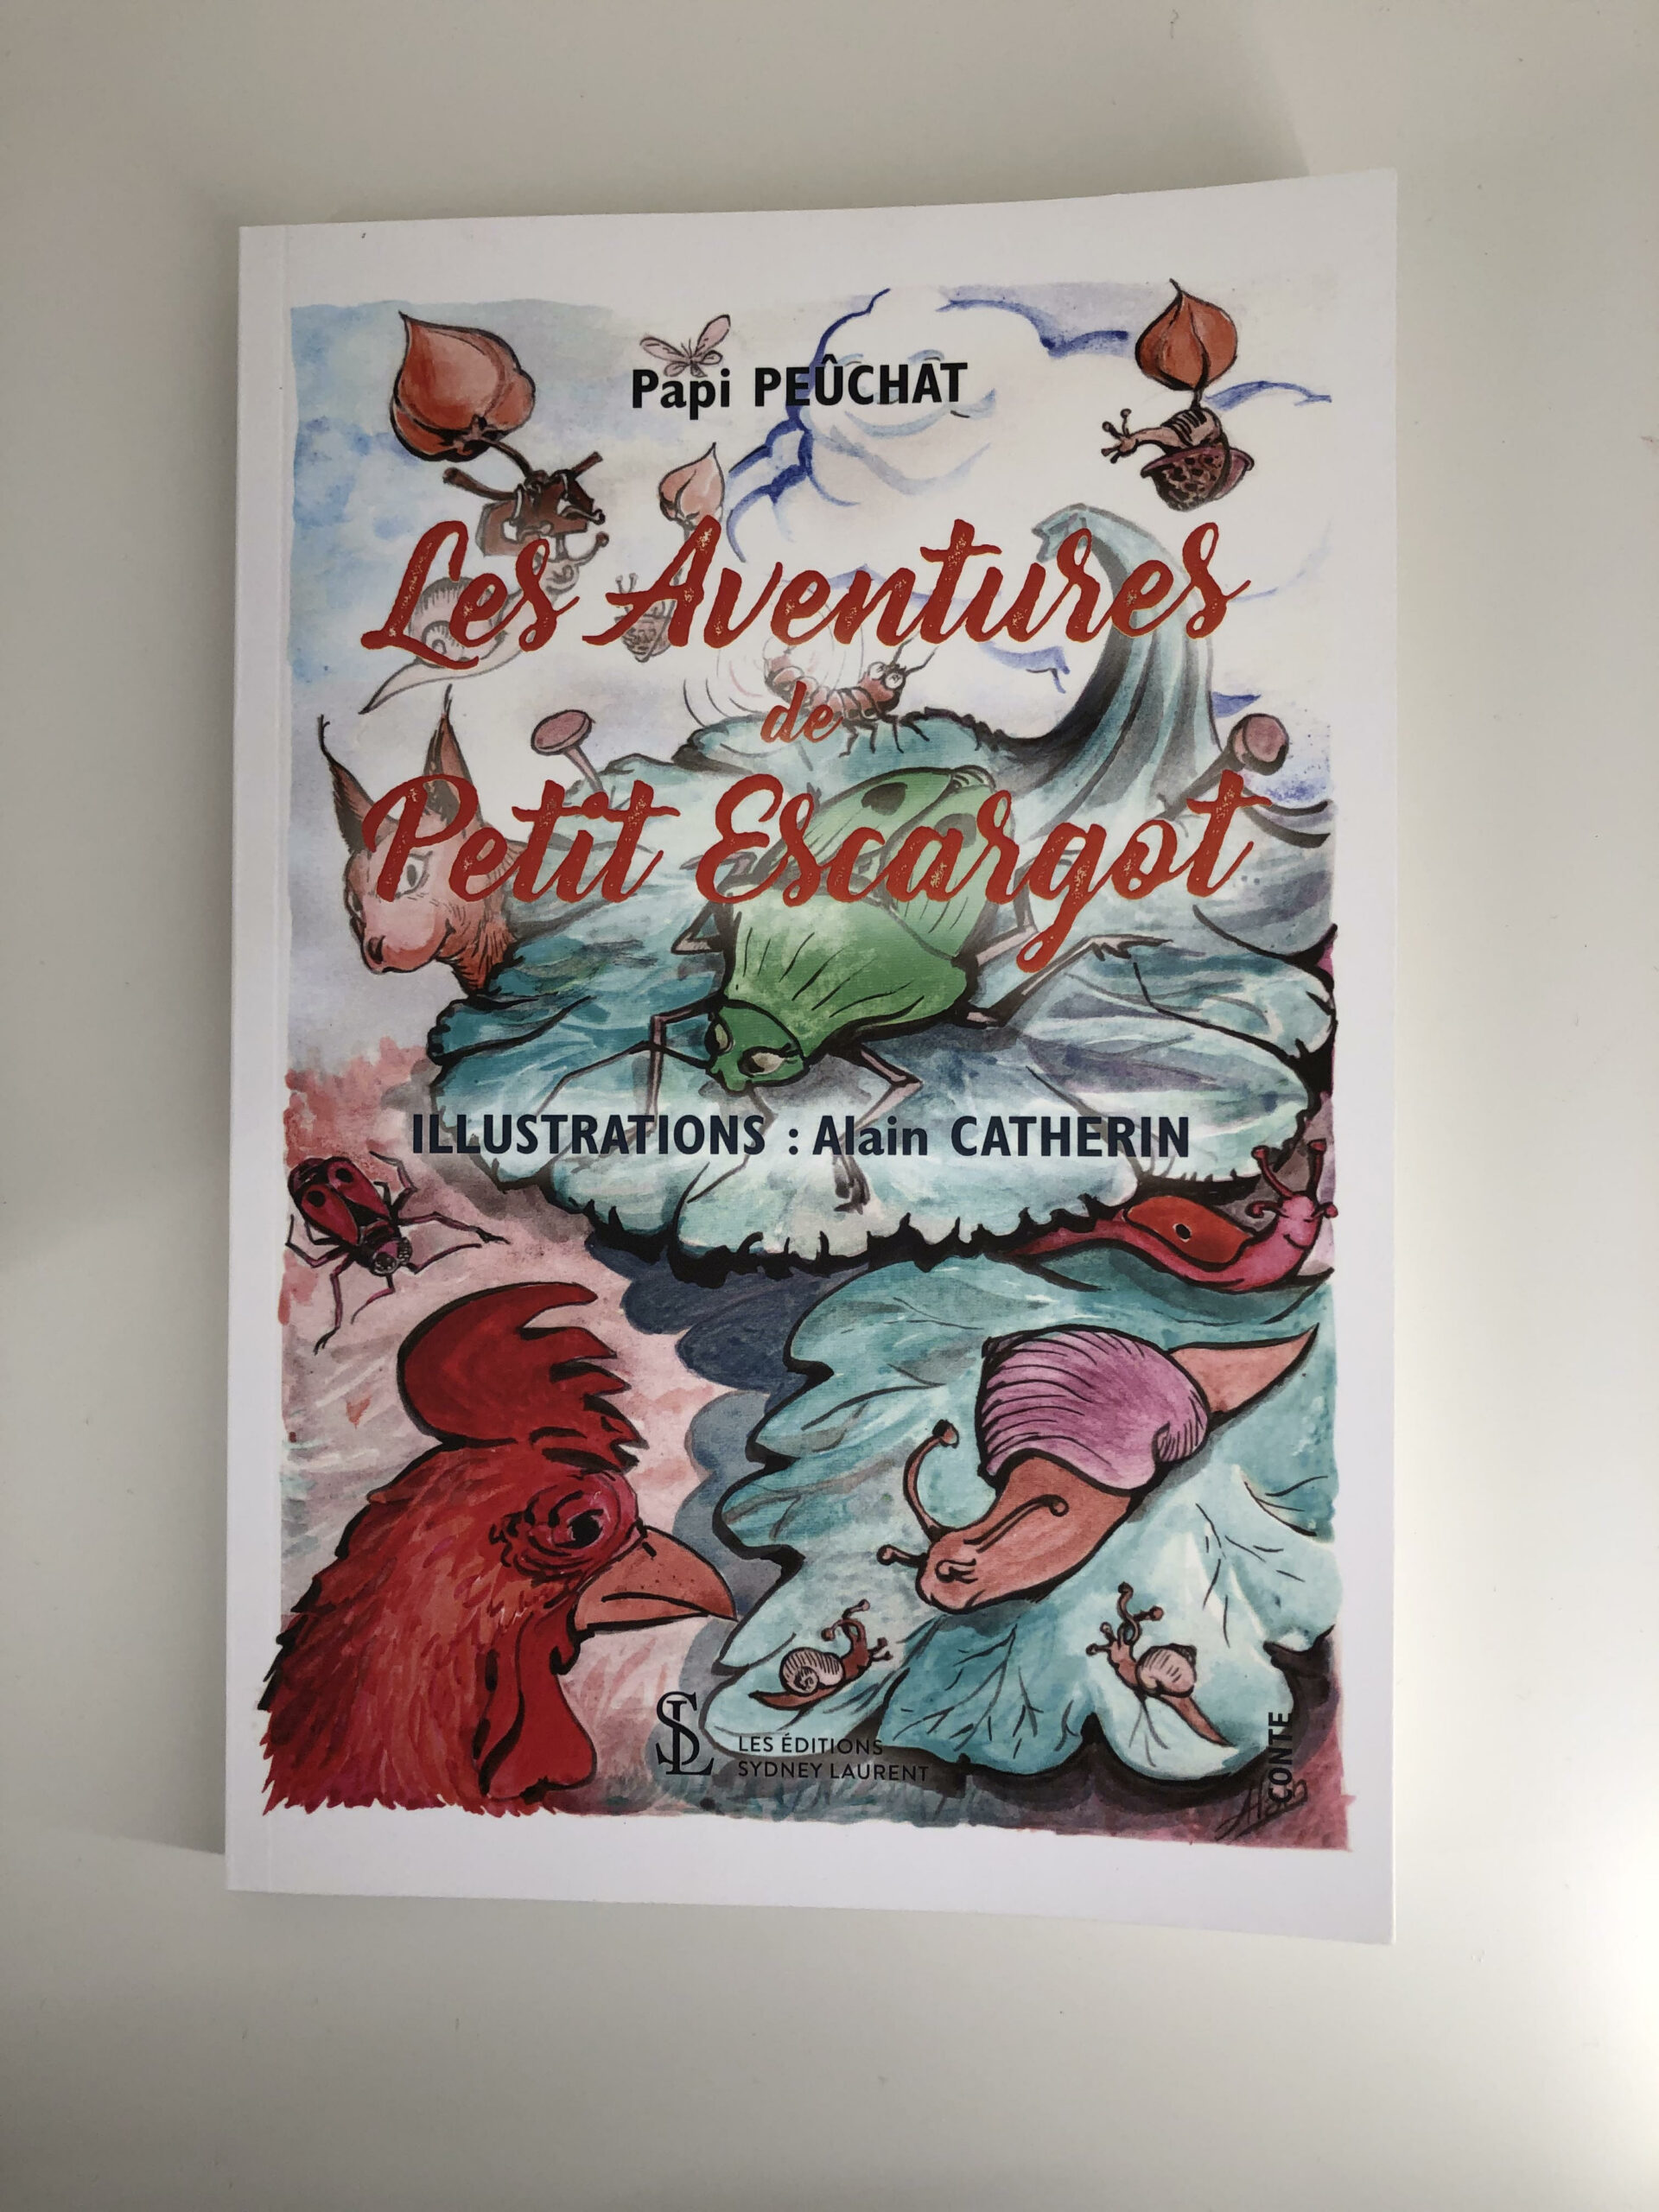 Livre “Les aventures de petit escargot” de Papi Pechat